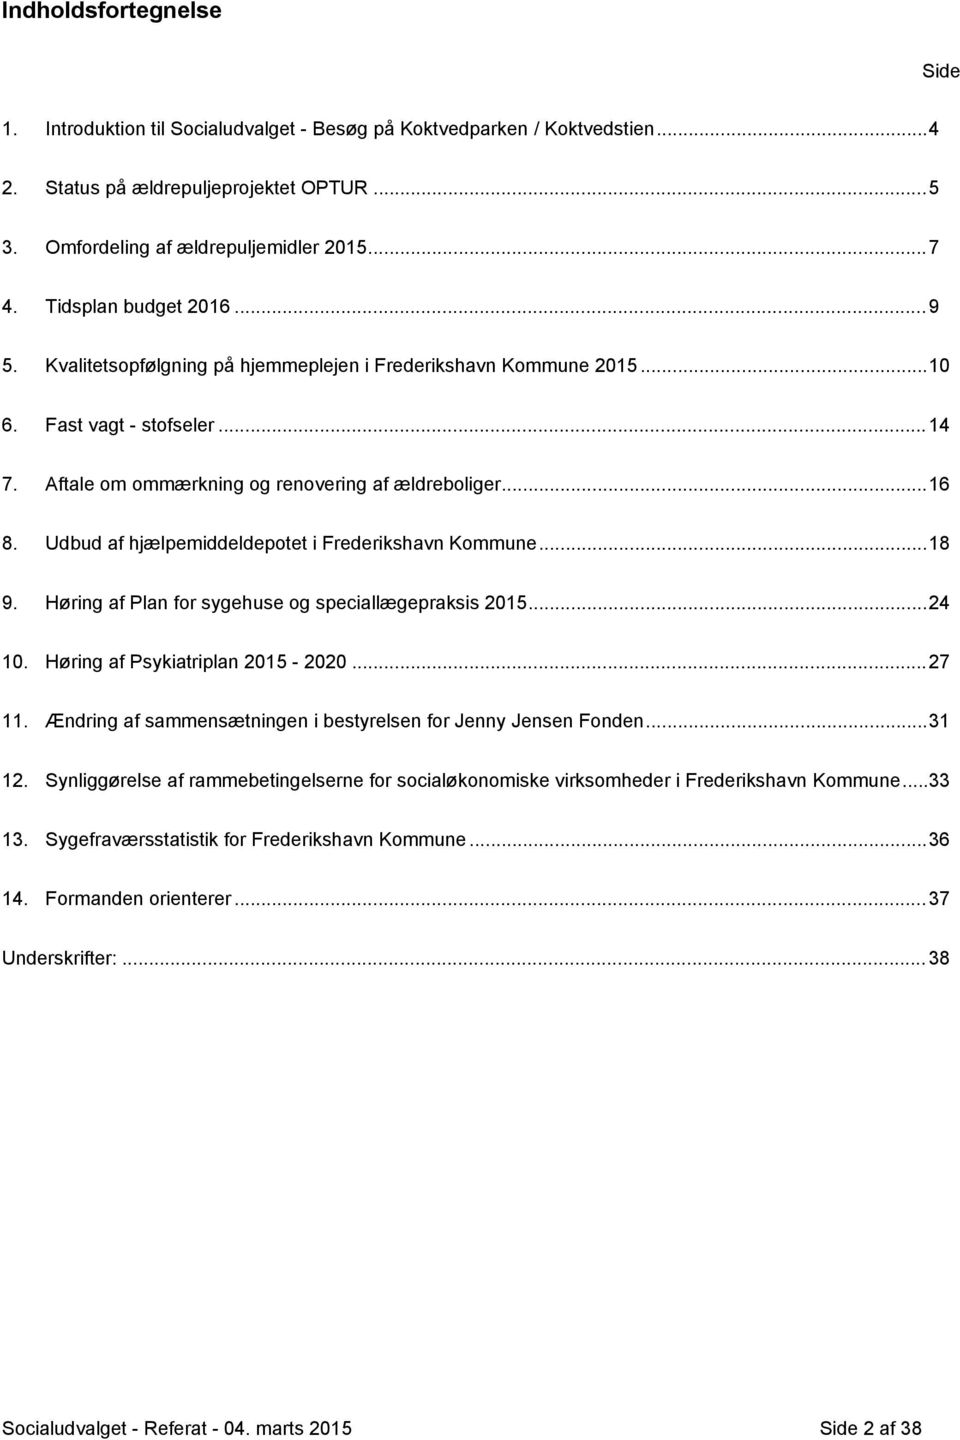 Udbud af hjælpemiddeldepotet i Frederikshavn Kommune...18 9. Høring af Plan for sygehuse og speciallægepraksis 2015...24 10. Høring af Psykiatriplan 2015-2020...27 11.